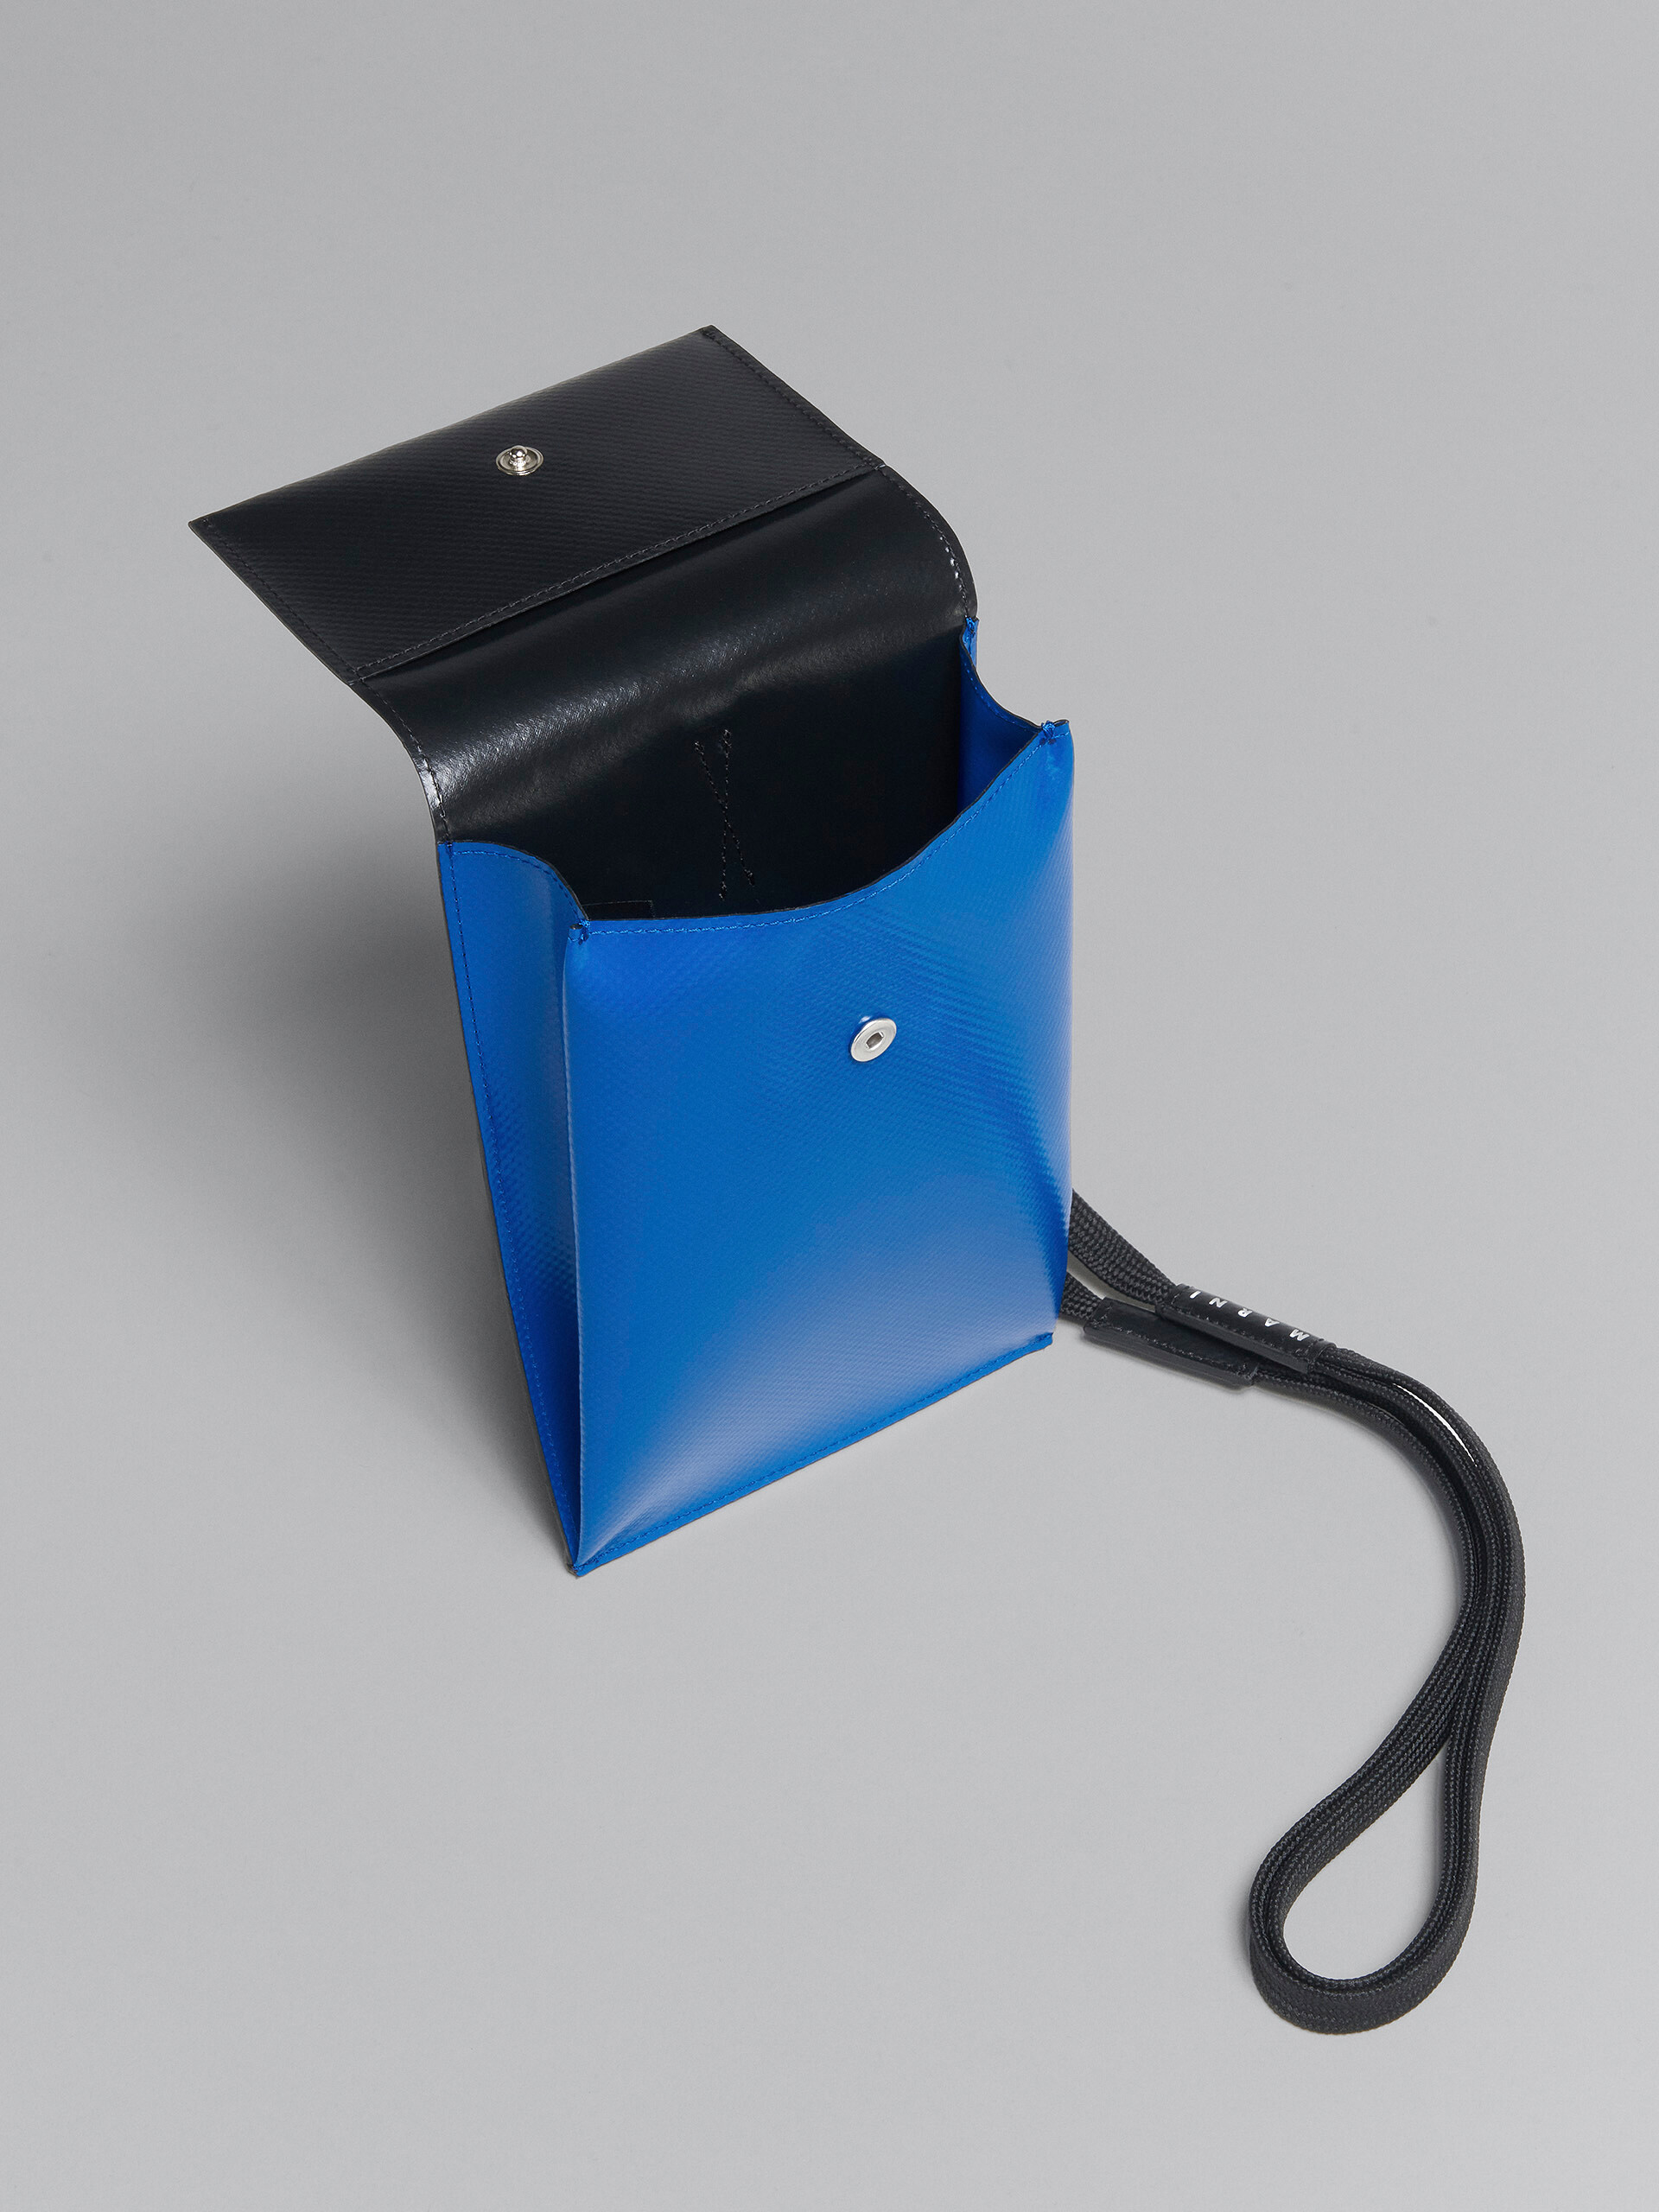 Smartphone-Hülle Tribeca in Blau und Schwarz - Brieftaschen & Kleinlederwaren - Image 4